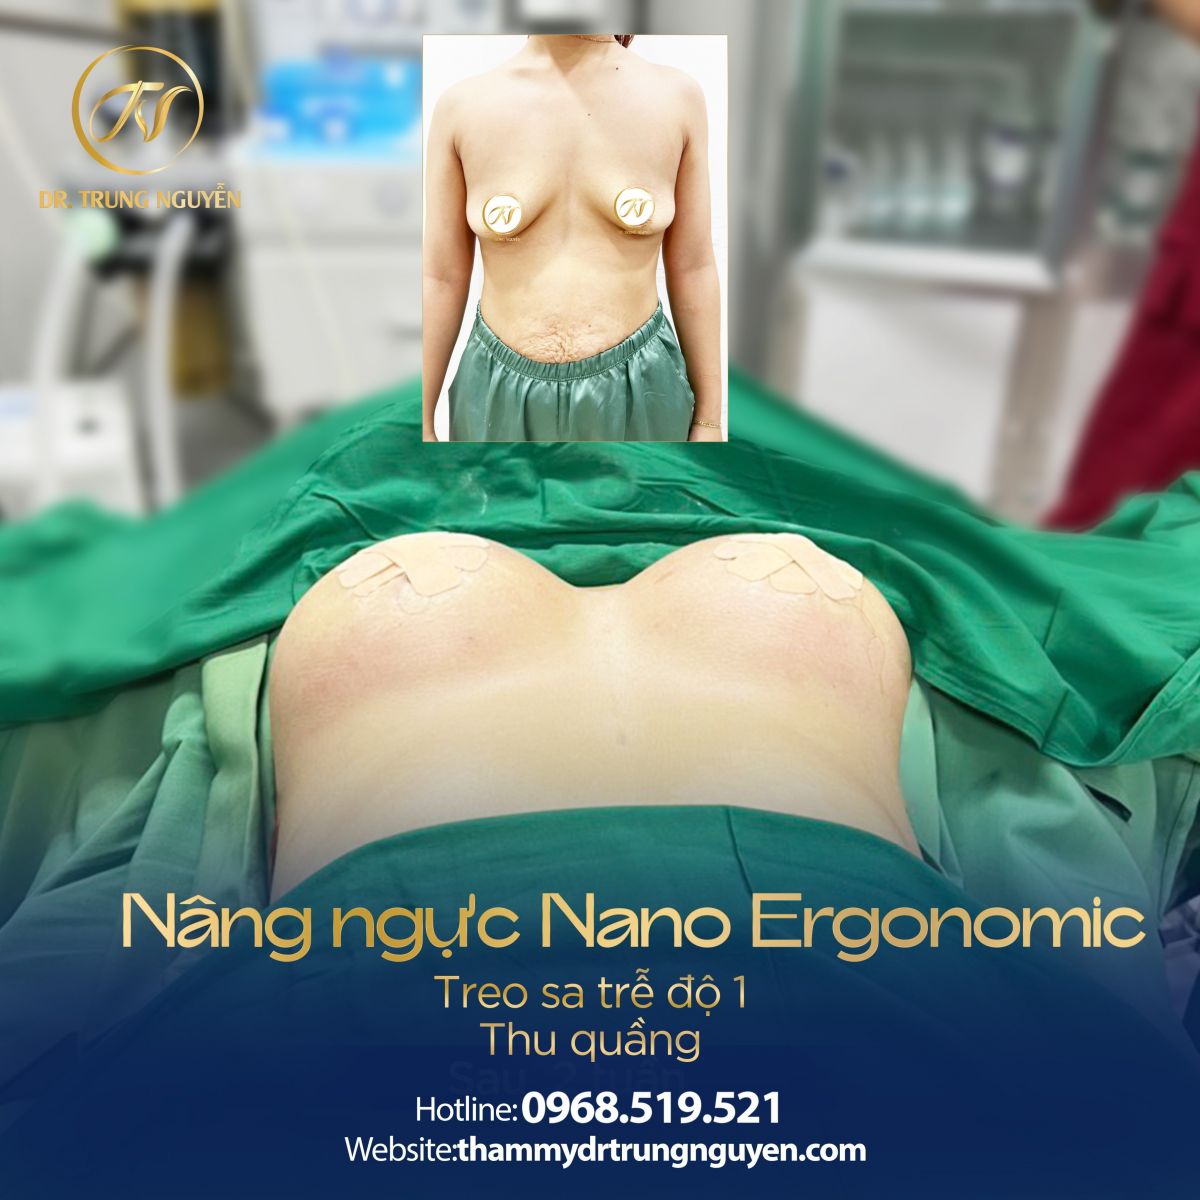 Khách hàng nâng ngực bằng phương pháp đặt túi Nano Ergonomic